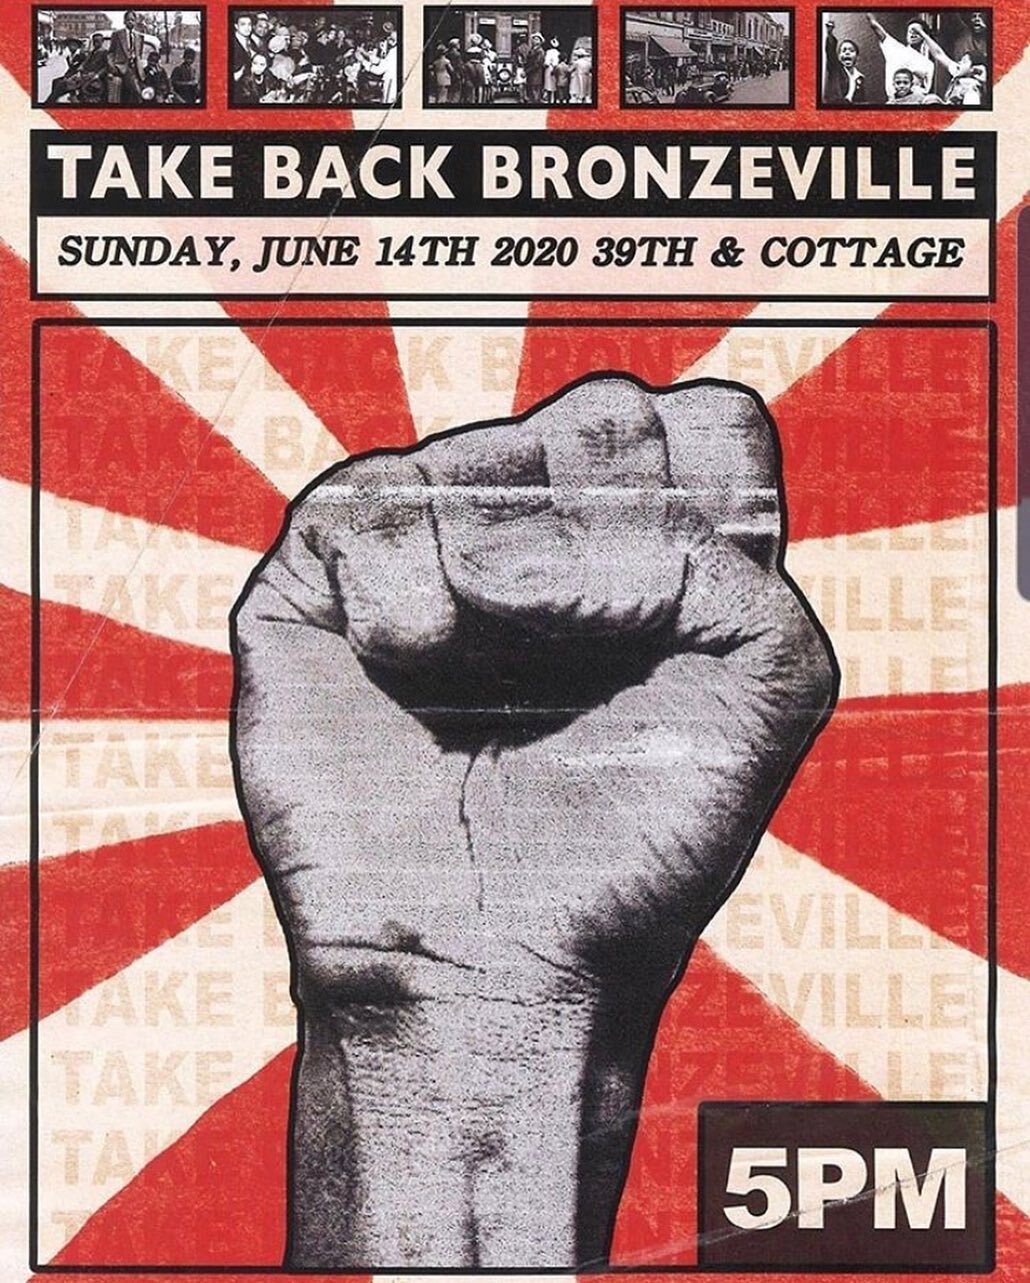 Sunday. Bronzeville. We March! #NKstaySlayed